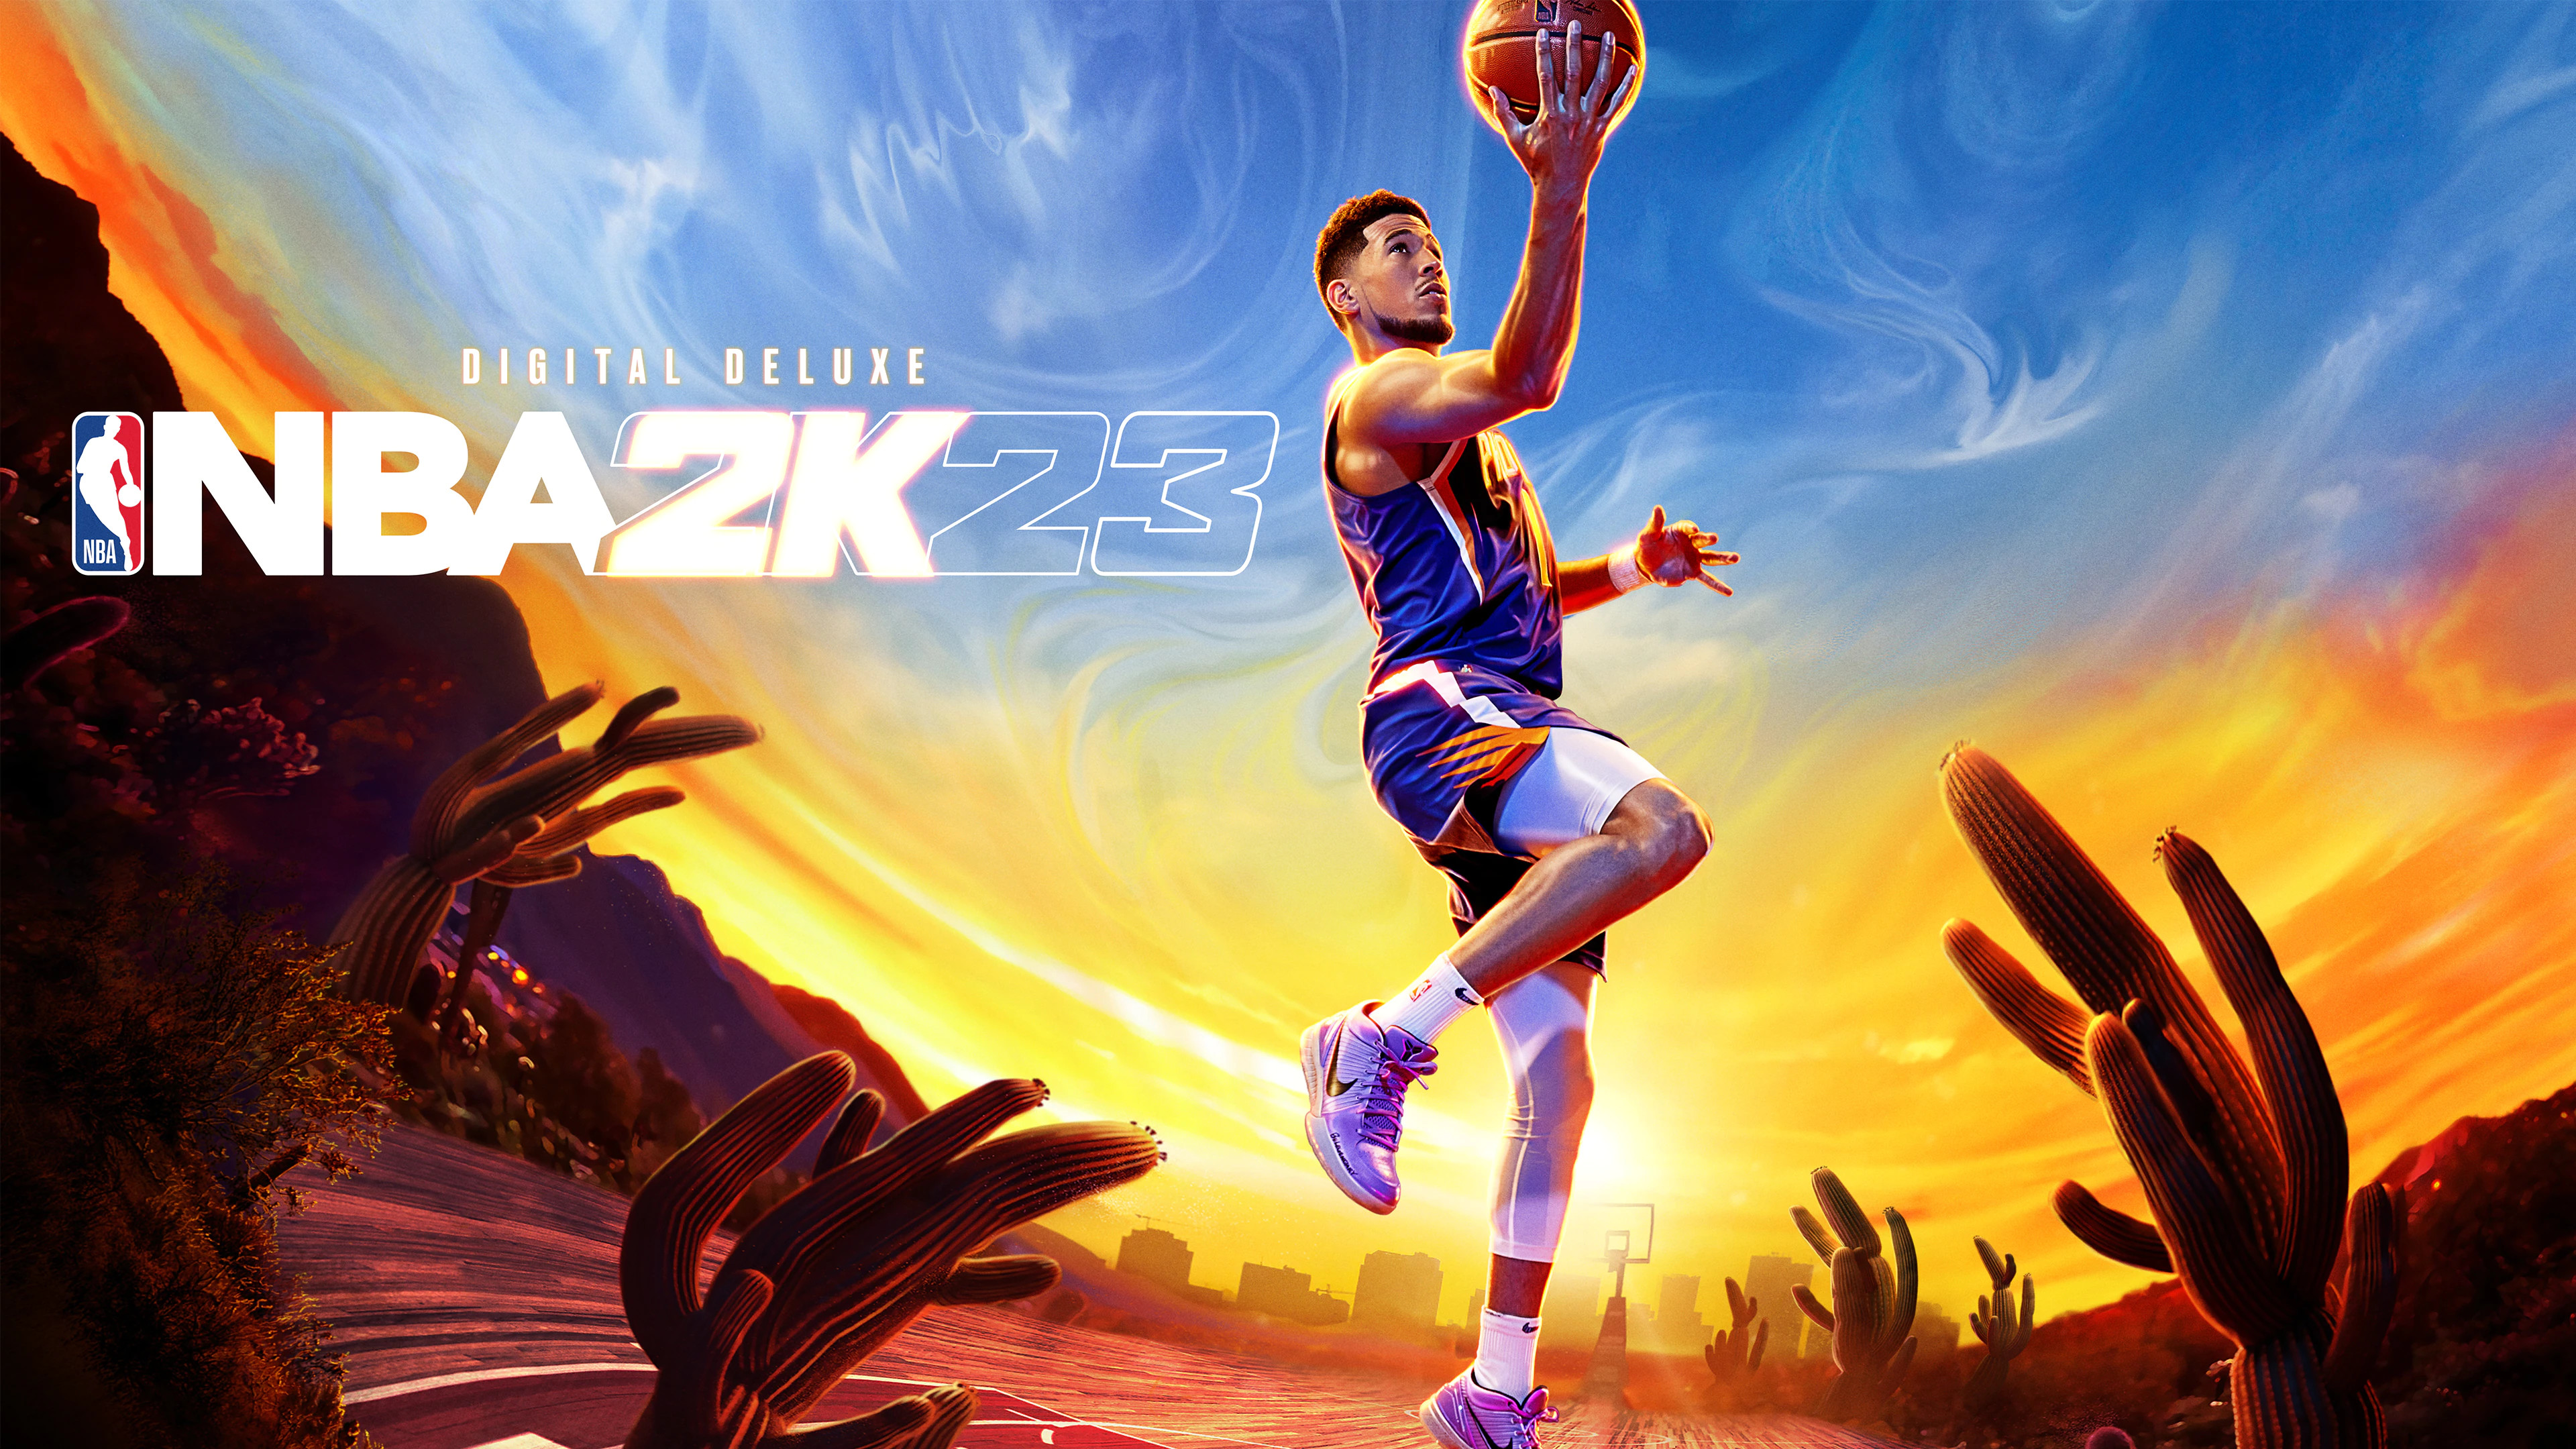 NBA 2K23 MYTEAM - FULL TROPHY CASE GUIDE 